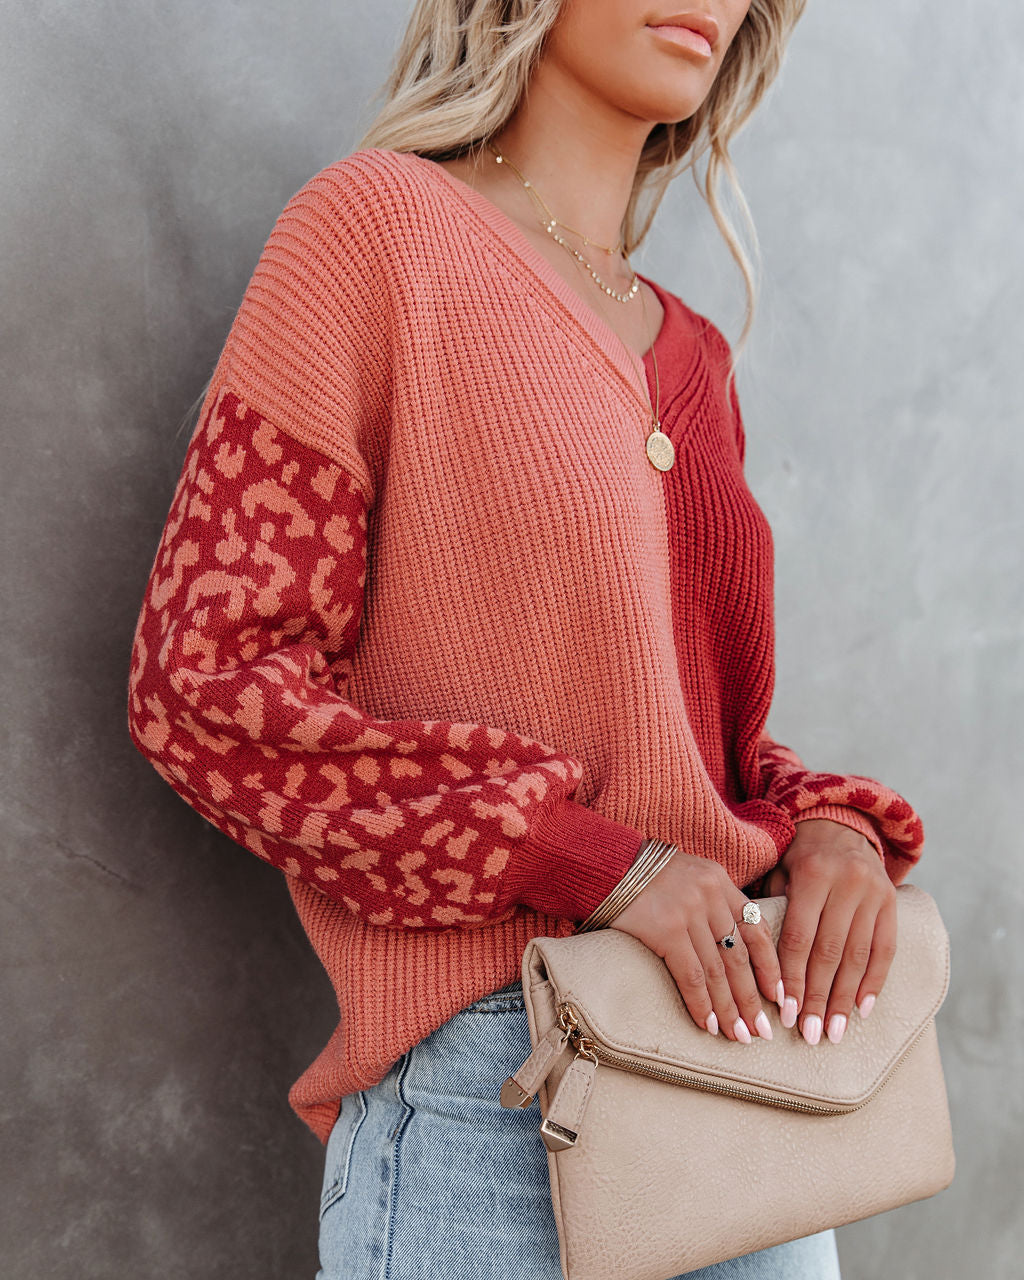 Change Of Heart Two-Tone Knit Leopard Sweater - Terracotta/ Peach